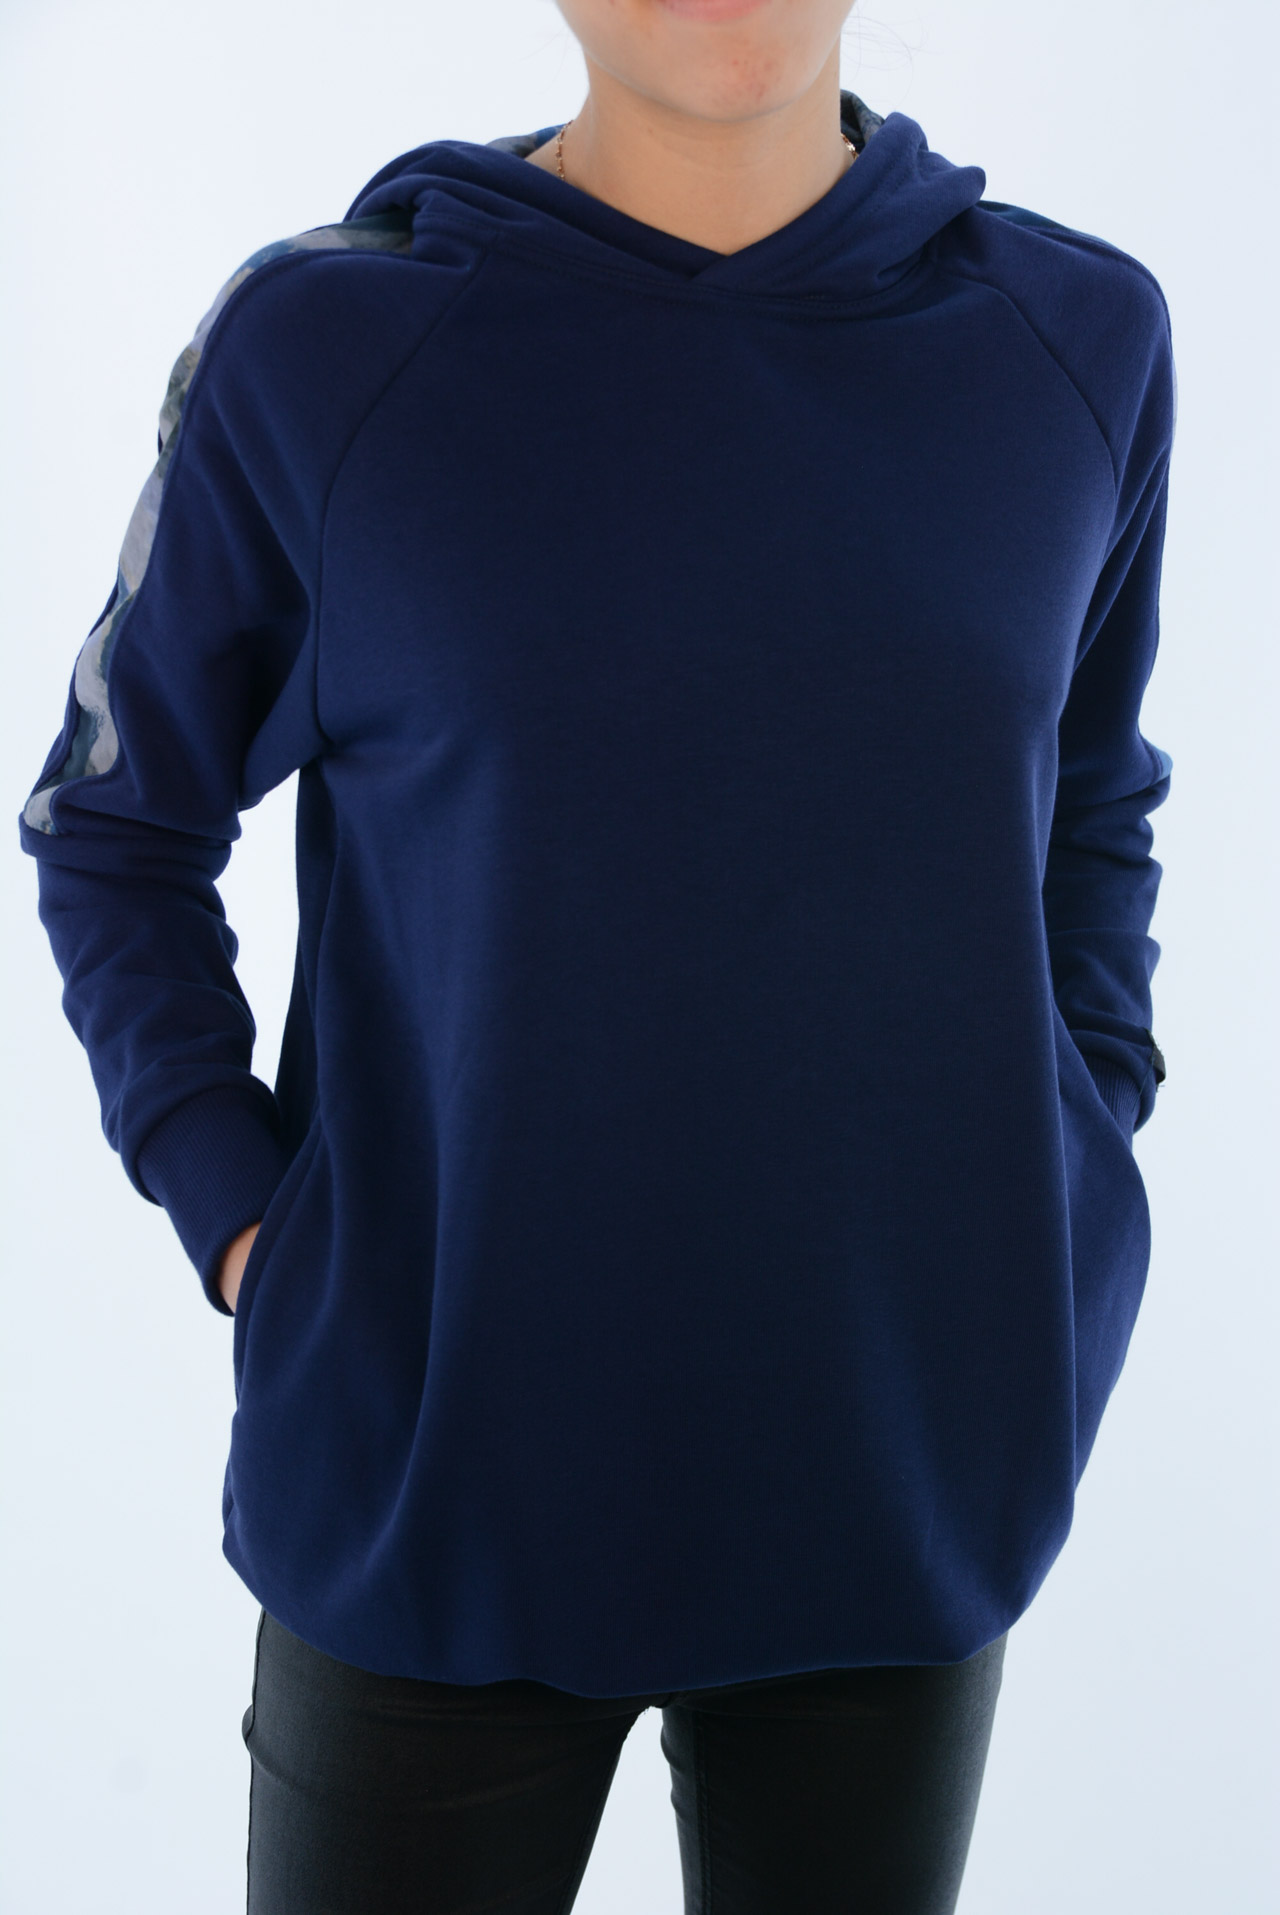 Μπλουζοφόρεμα φούτερ γυναικείο κωδ. BM1176 μπροστινή όψη μπλε